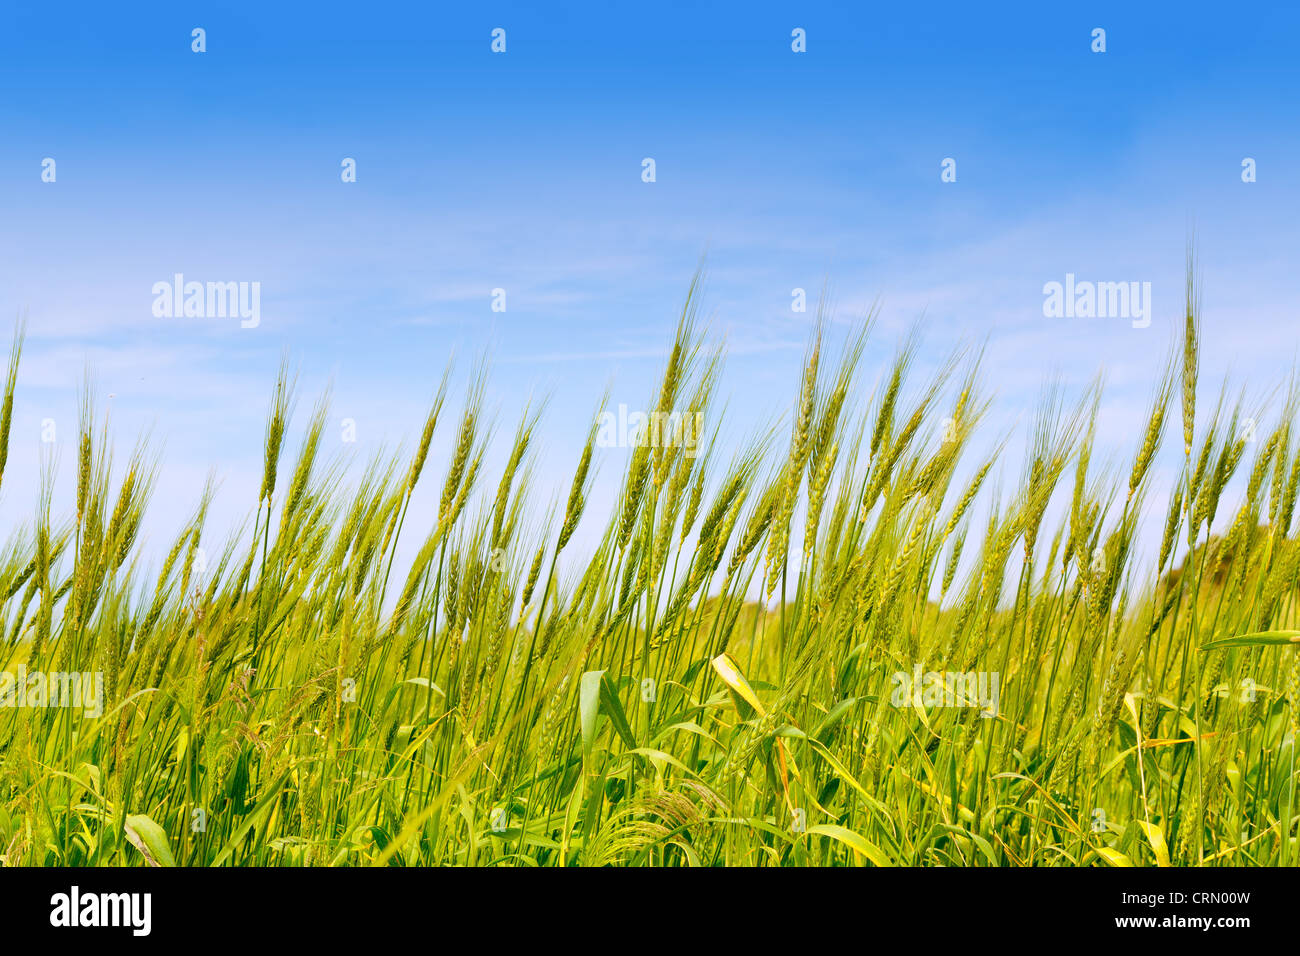 Dans le champ de blé vert Baléares Formentera island under blue sky Banque D'Images